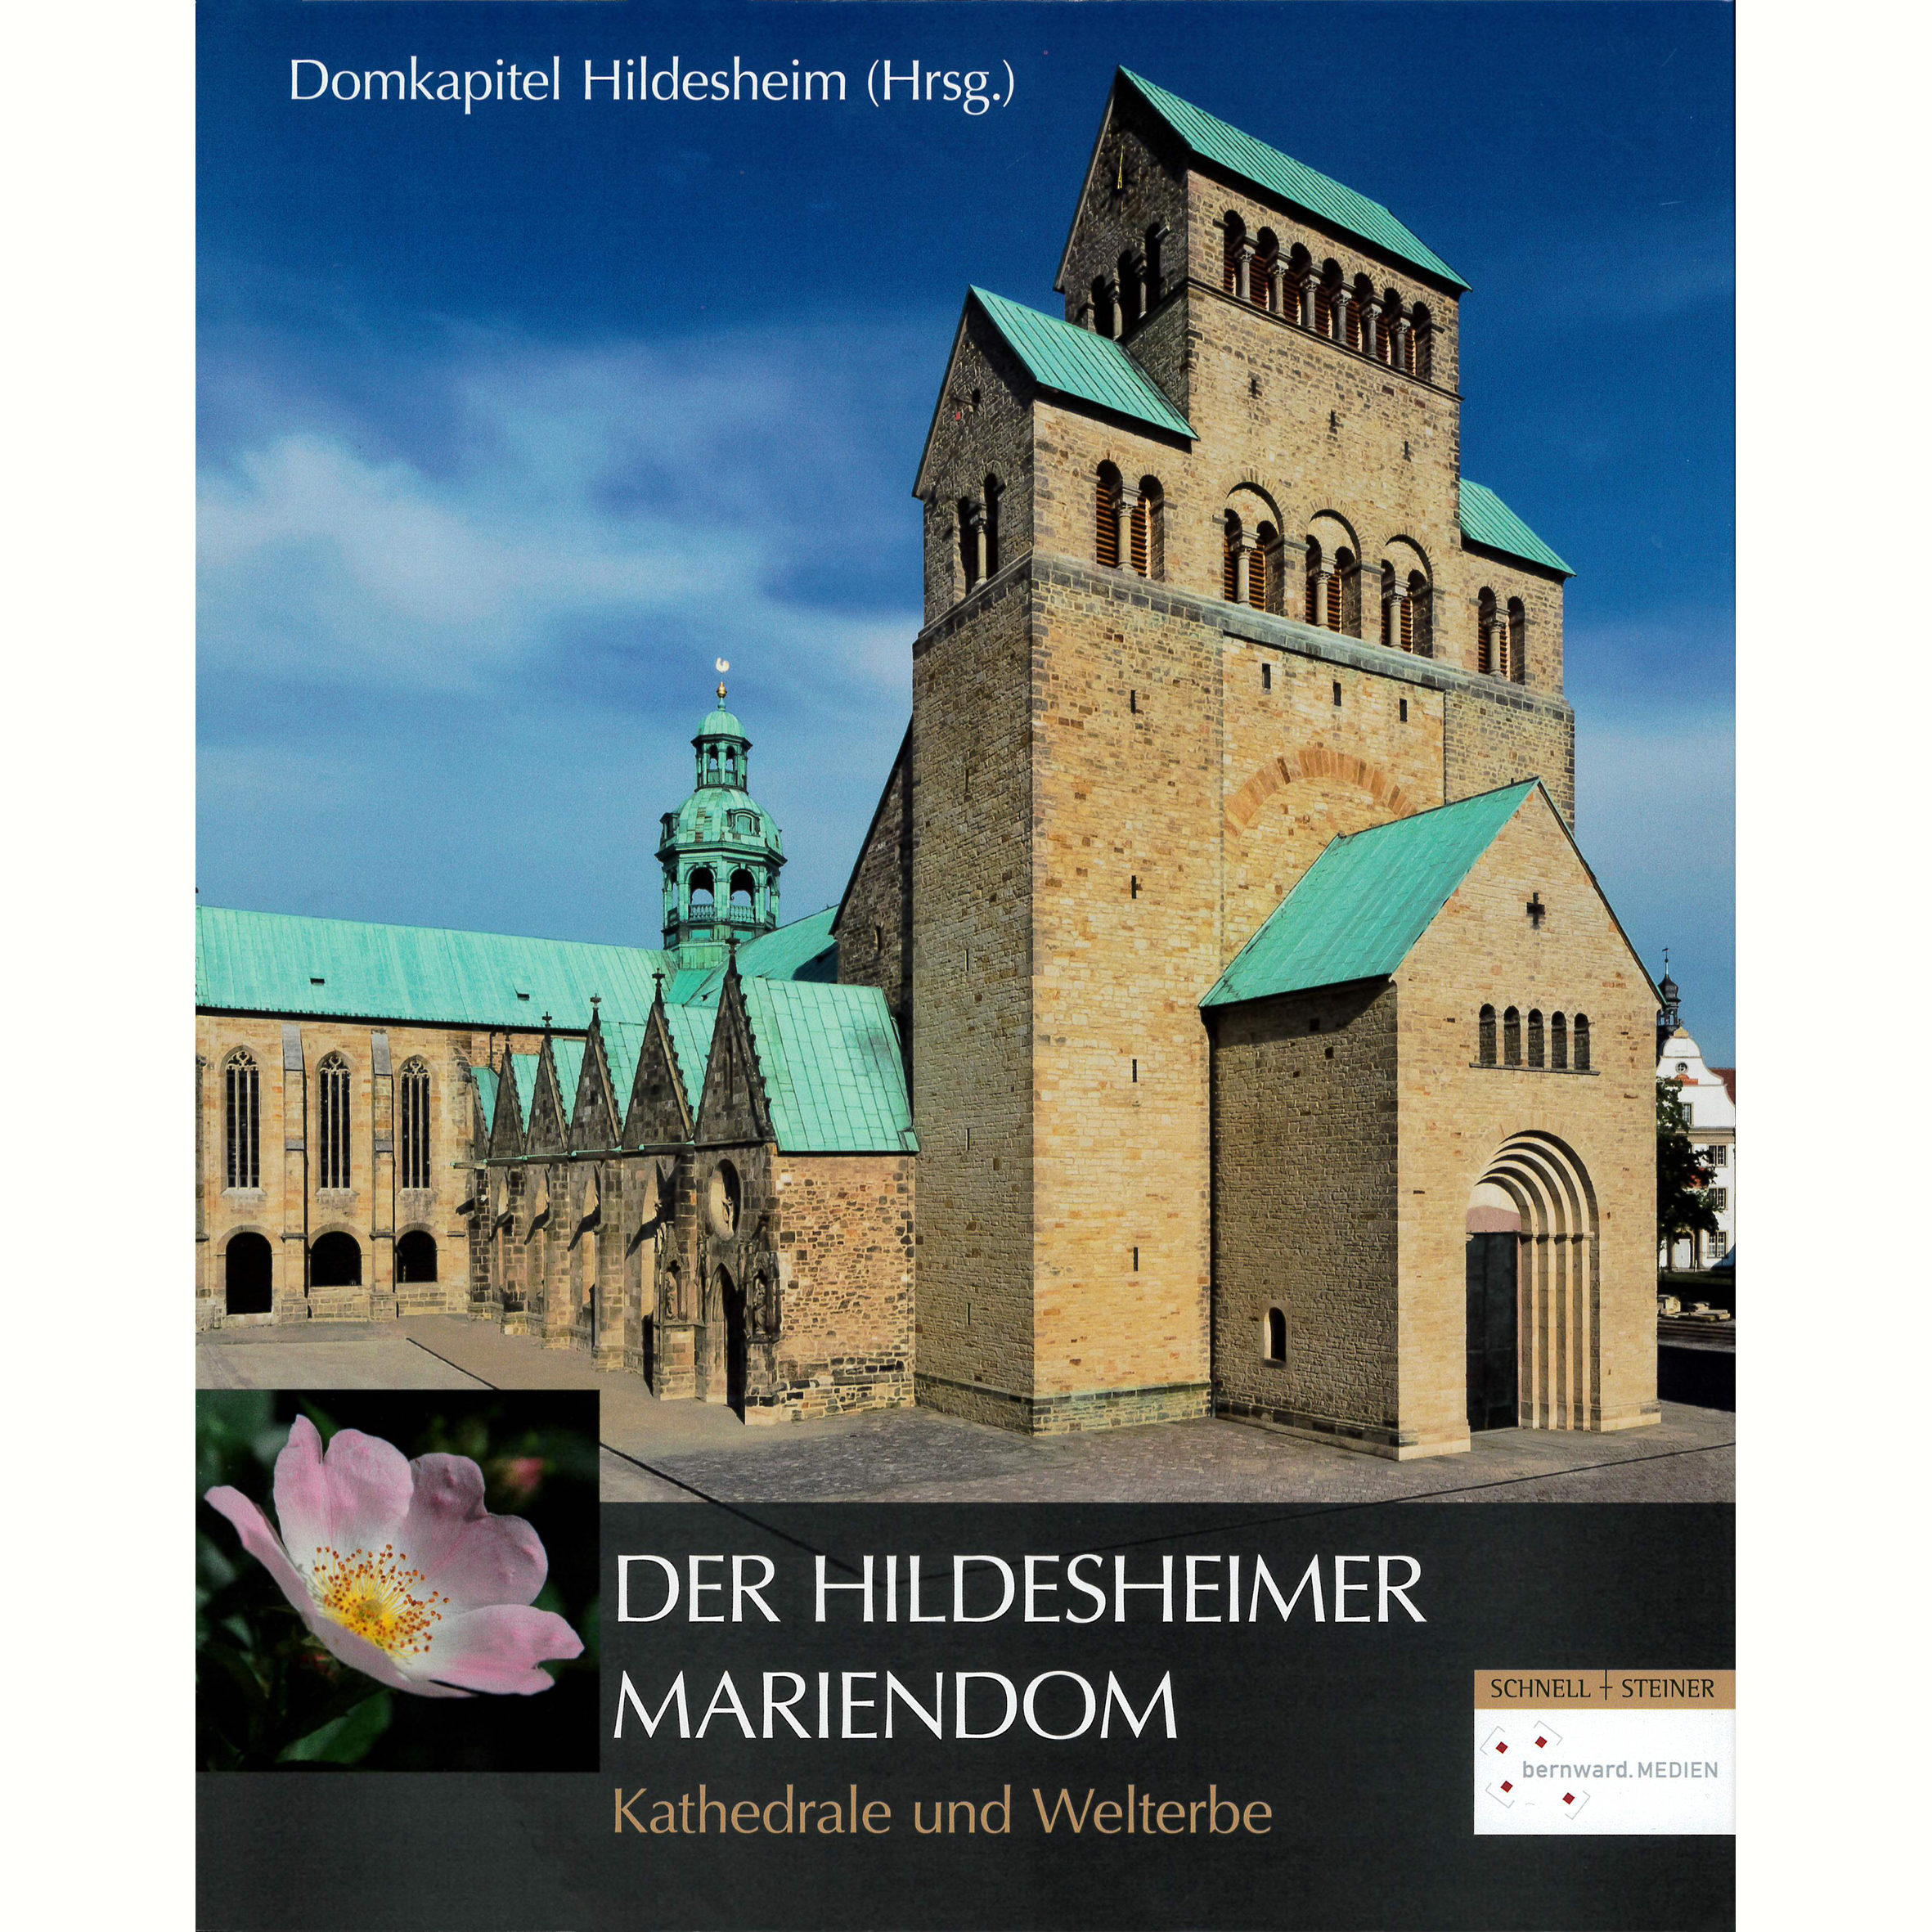 Der Hildesheimer Mariendom. Kathedrale und Welterbe